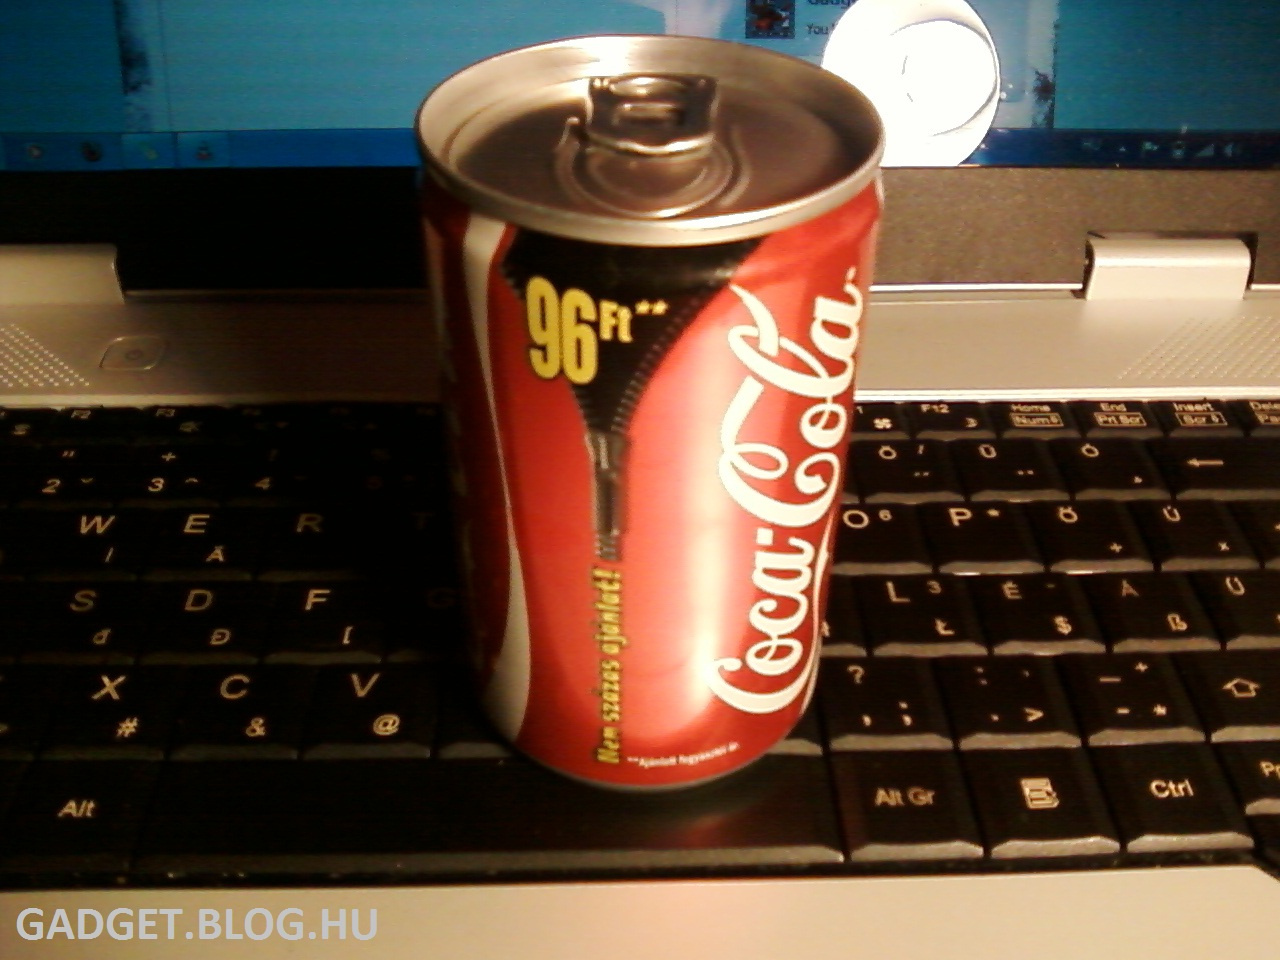 96ft-os coke